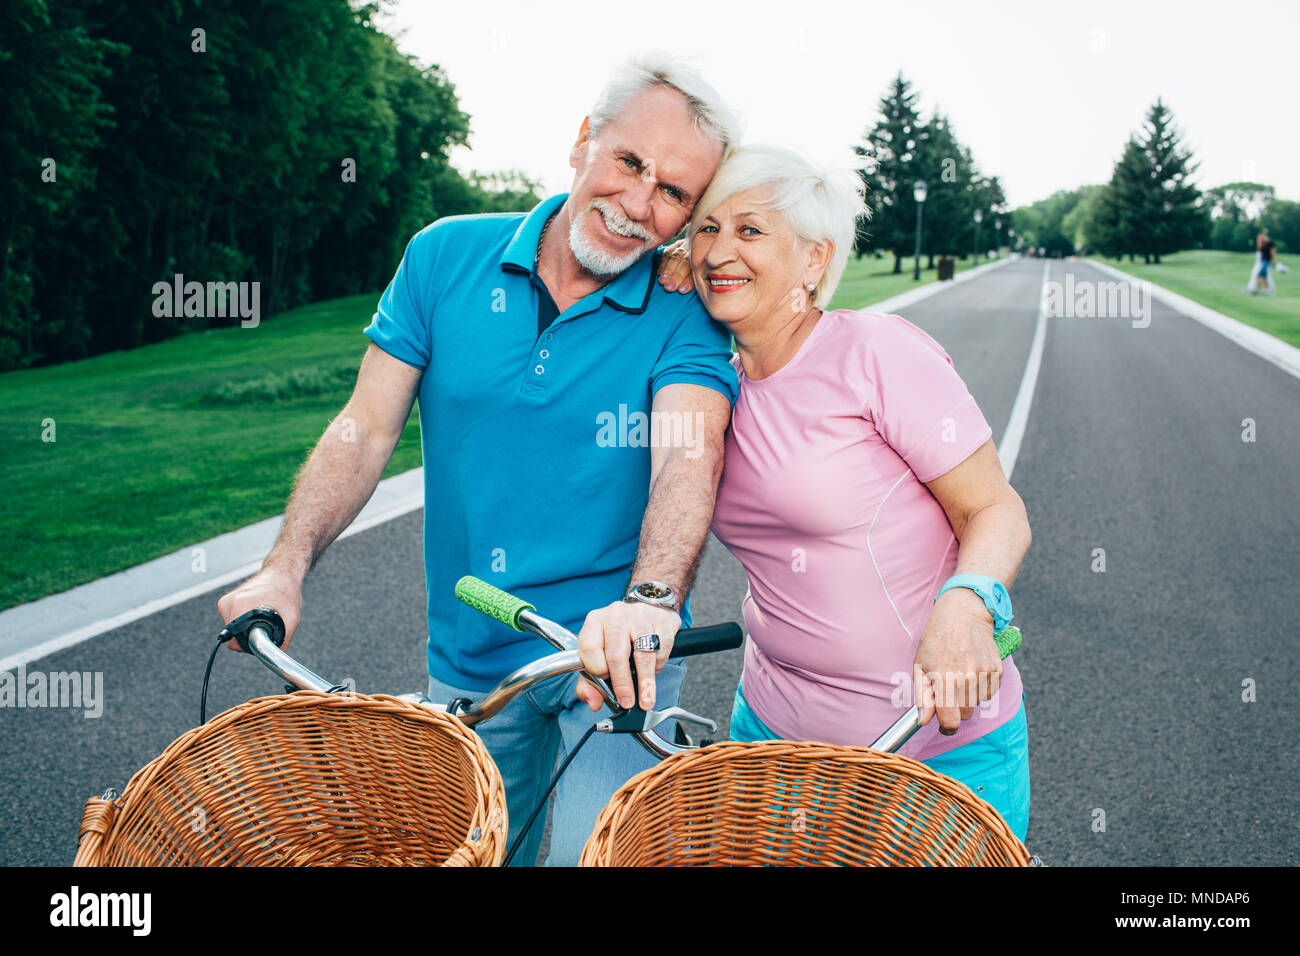 Randonnée à vélo, la retraite et les loisirs actifs Banque D'Images